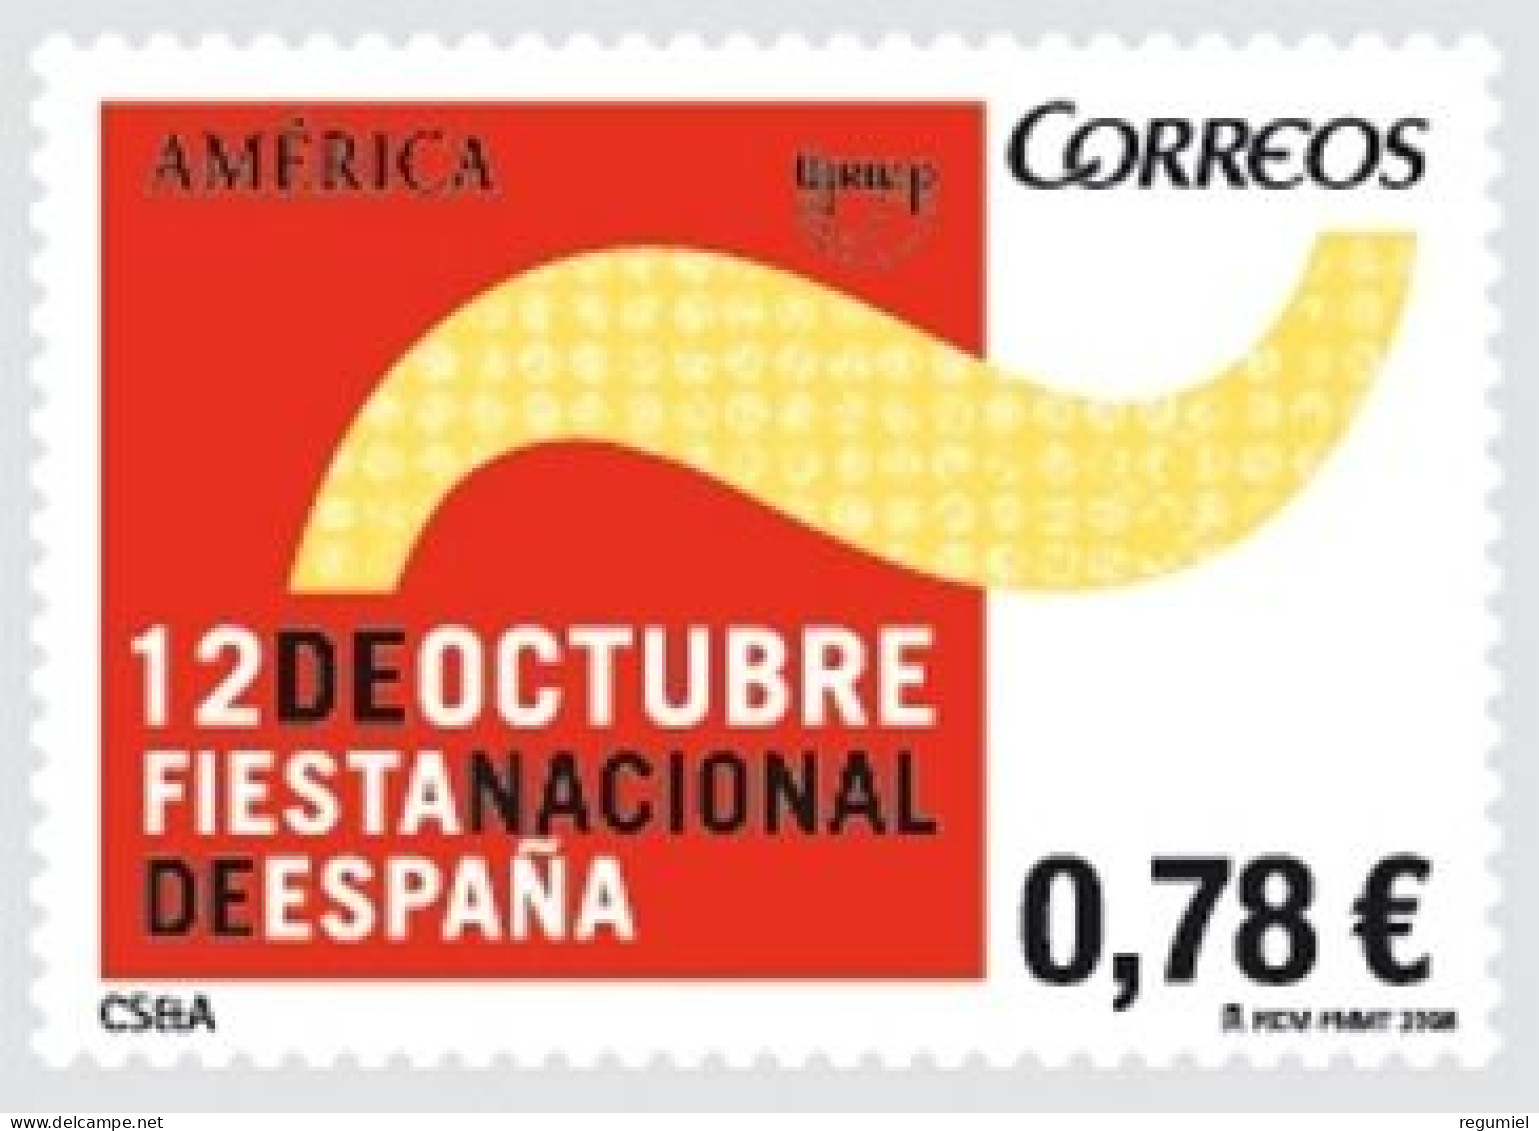 España 4438 **Upaep. 2008 - Unused Stamps